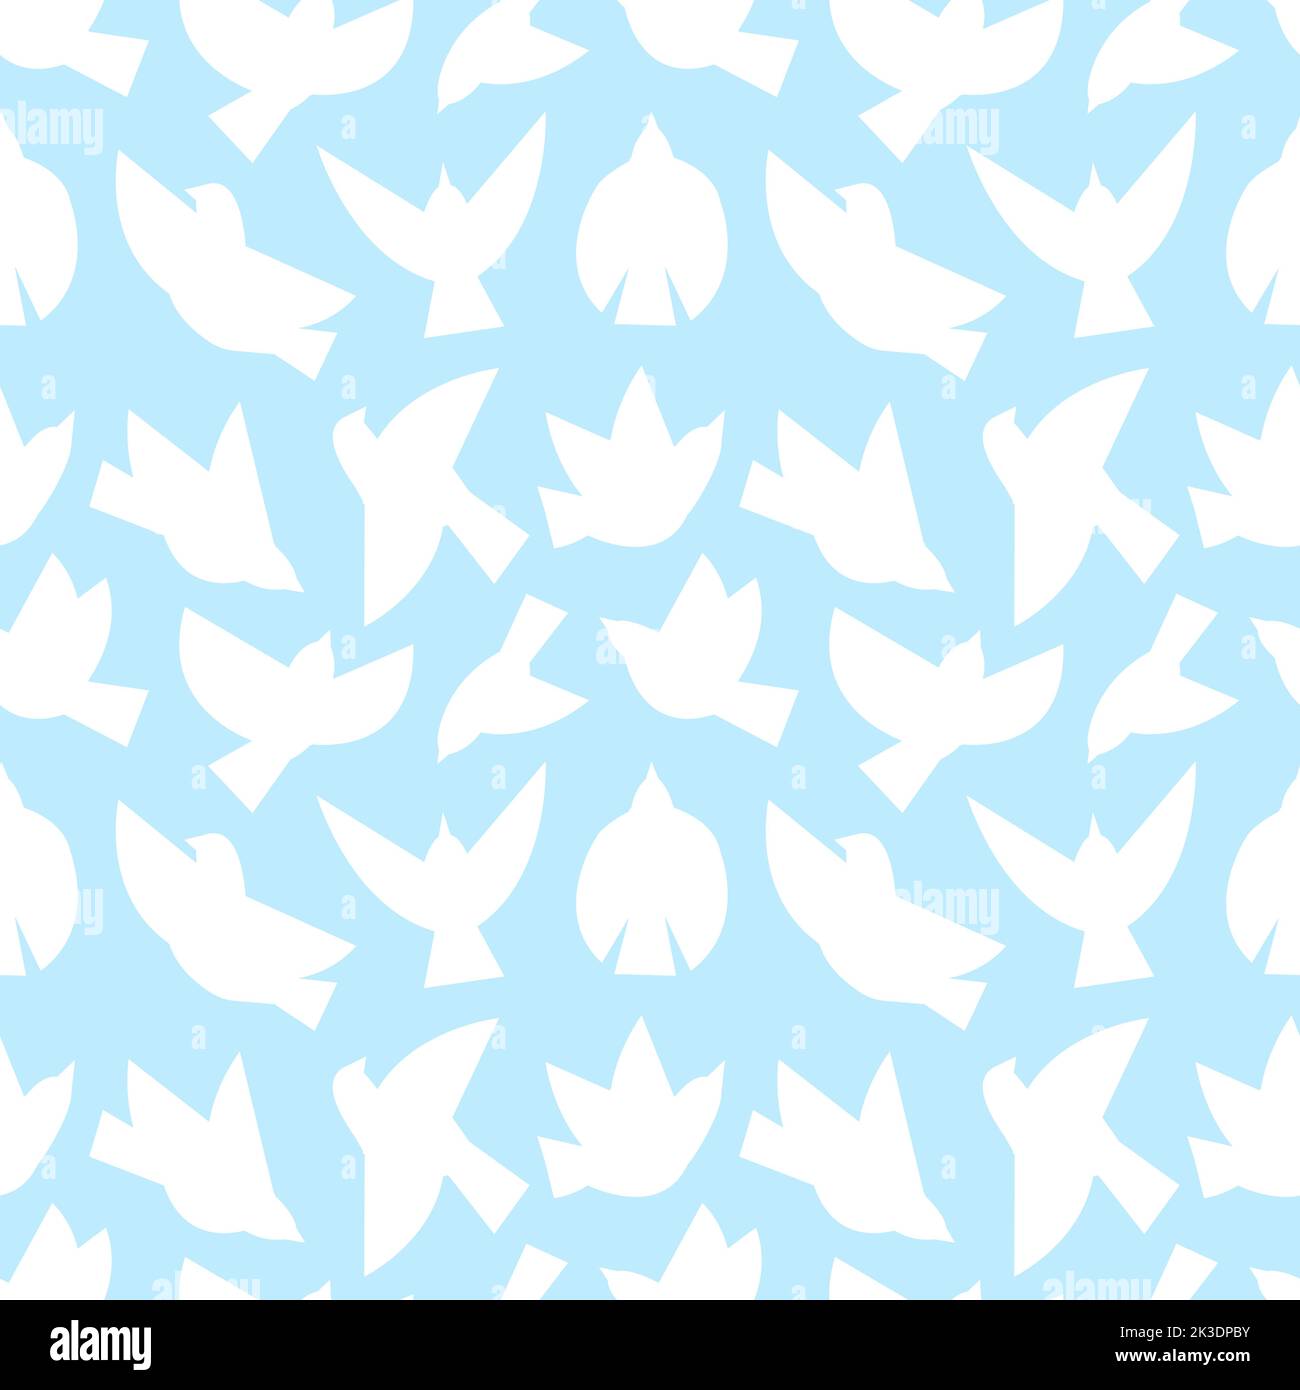 Abstrakte Silhouetten des fliegenden Vogels auf blauem Hintergrund. Nahtloses Muster mit weißem Vogel, Taube oder Möwe. Flach in verschiedenen Posen Tauben Stoffdruck. Vektorpunkt Stock Vektor